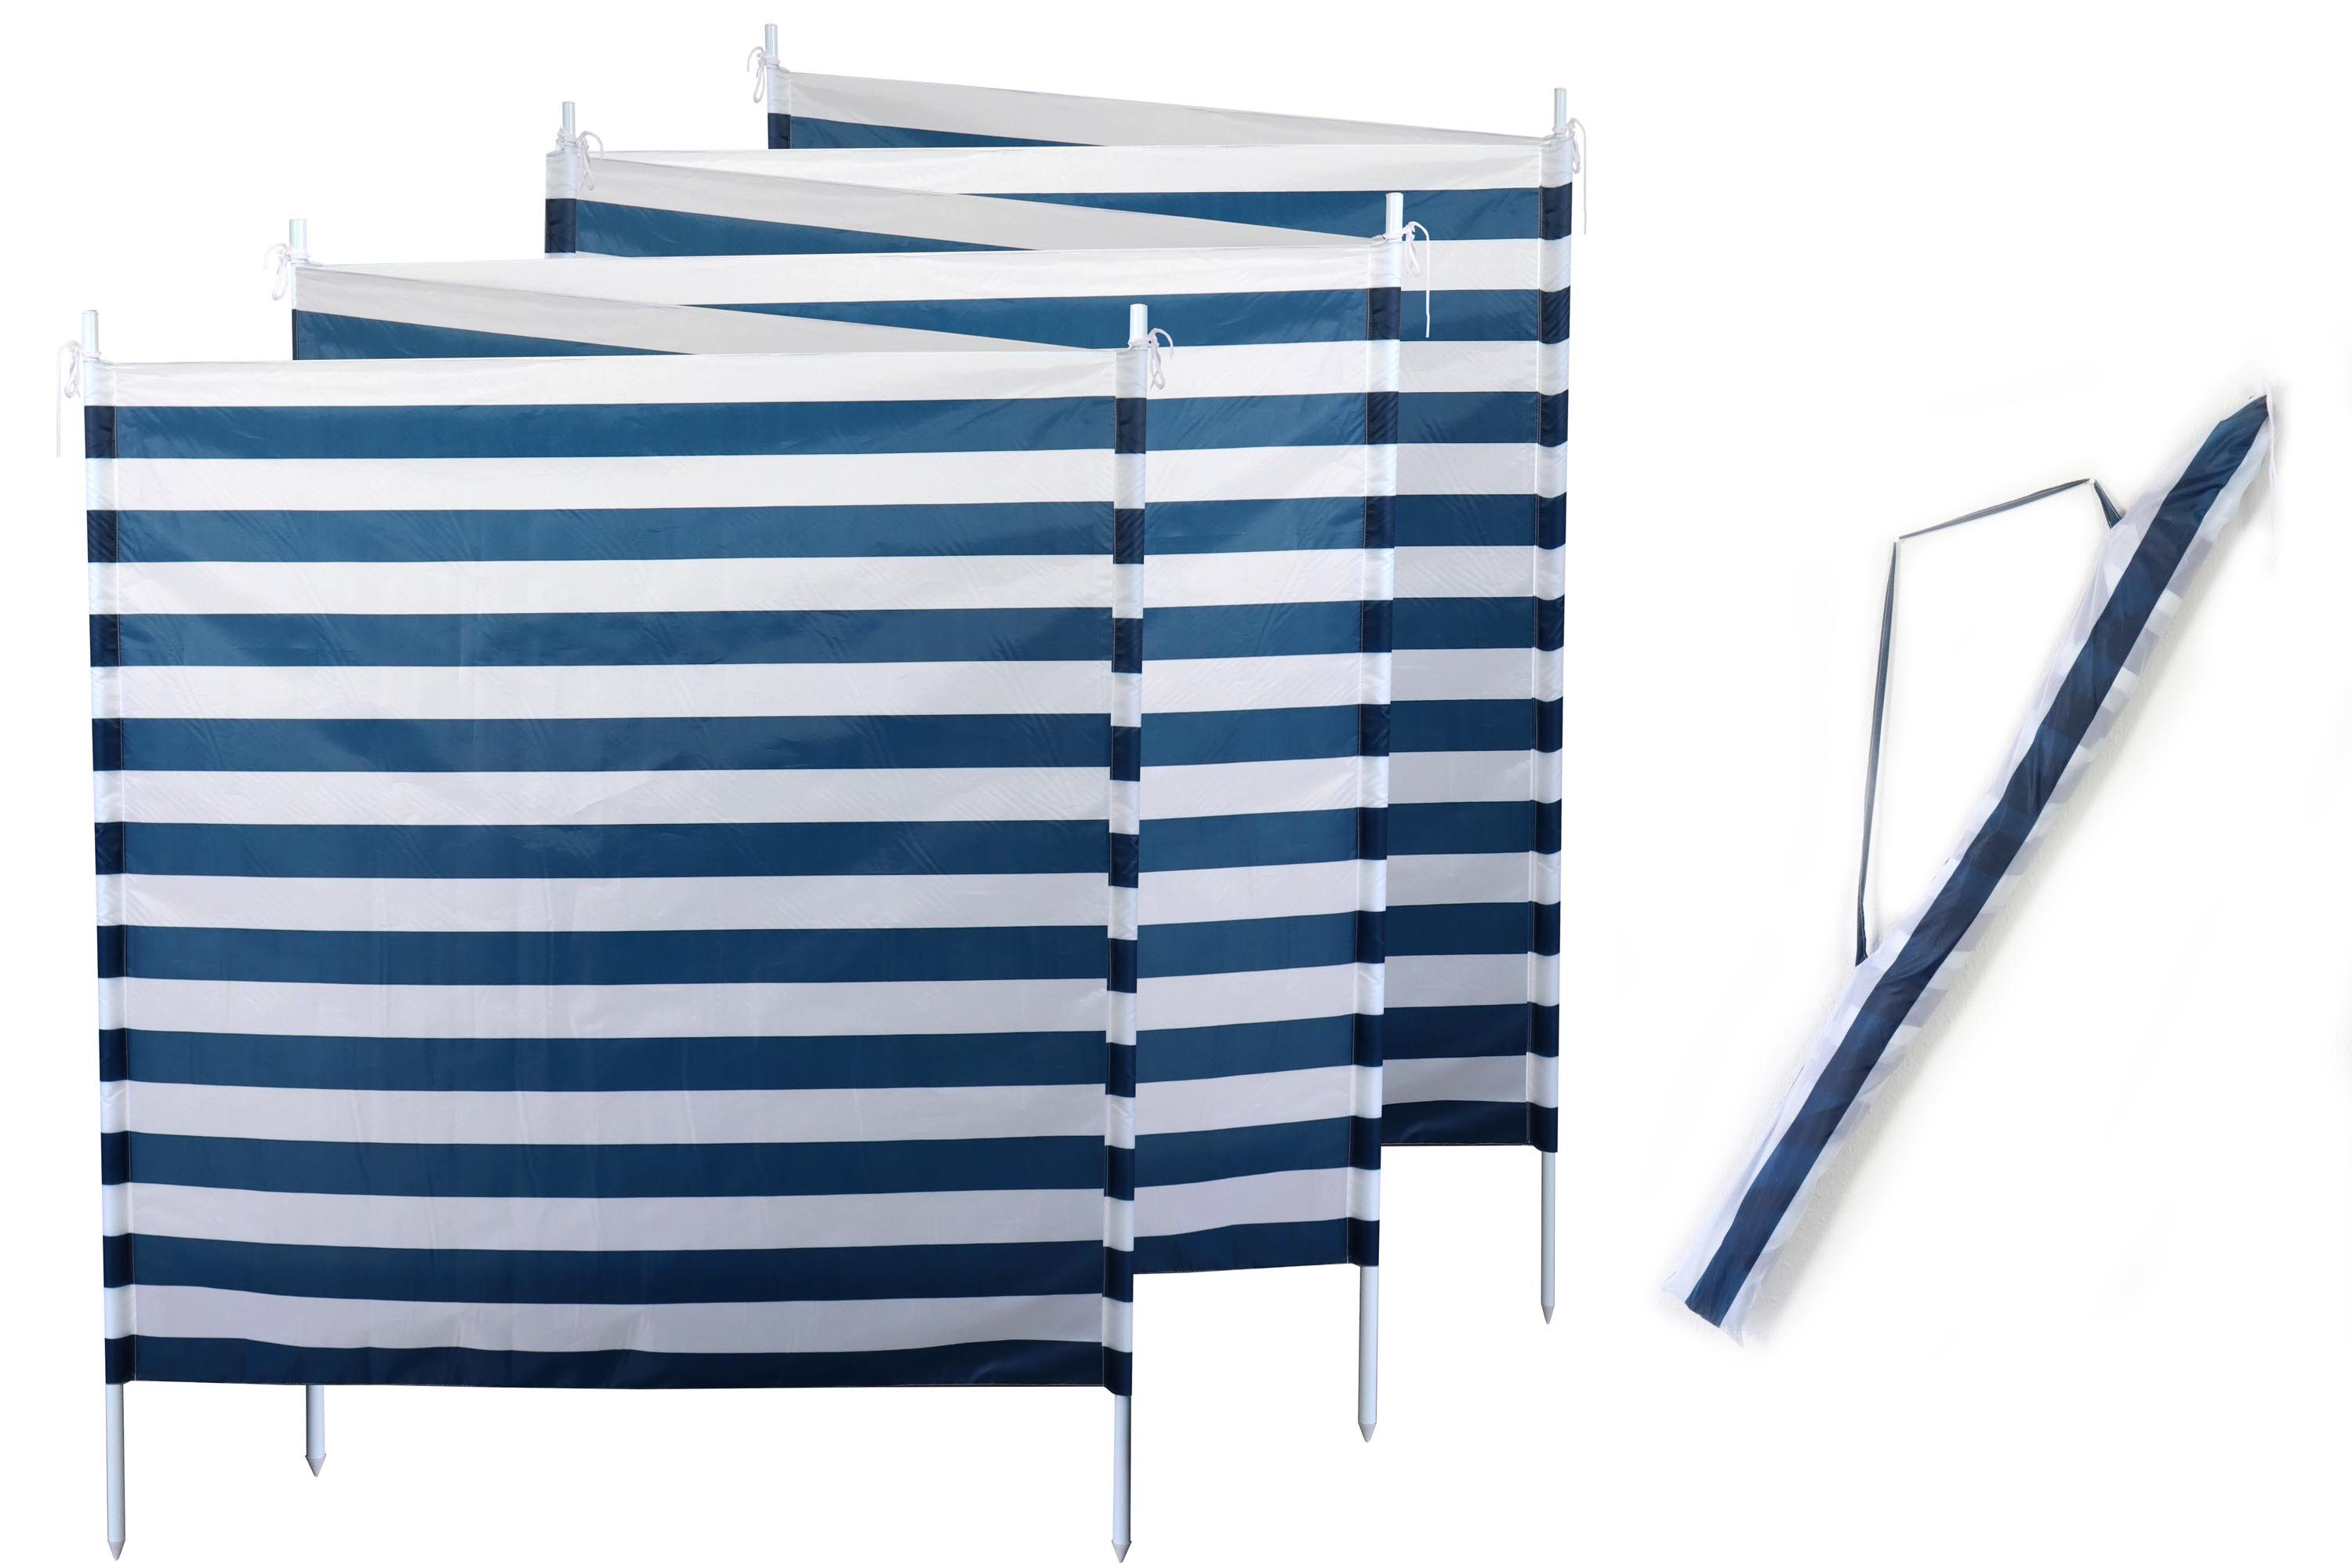 ELLUG Windschutz Sichtschutz Sonnenschutz blau weiß gestreift 6m*1,2m, 7 Stahlstangen